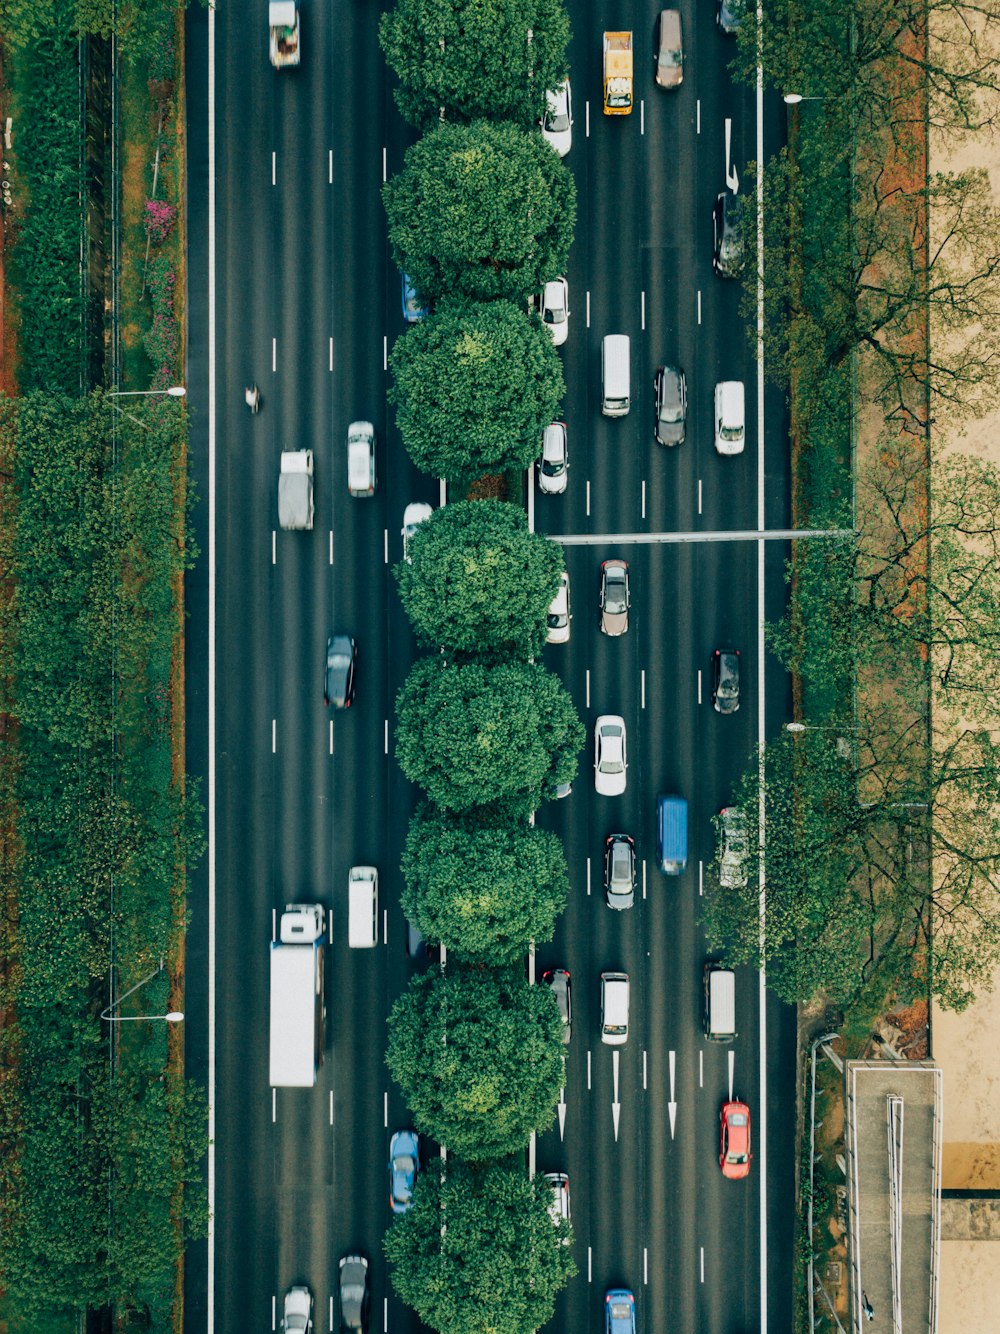 Photographie aérienne de la route avec des voitures